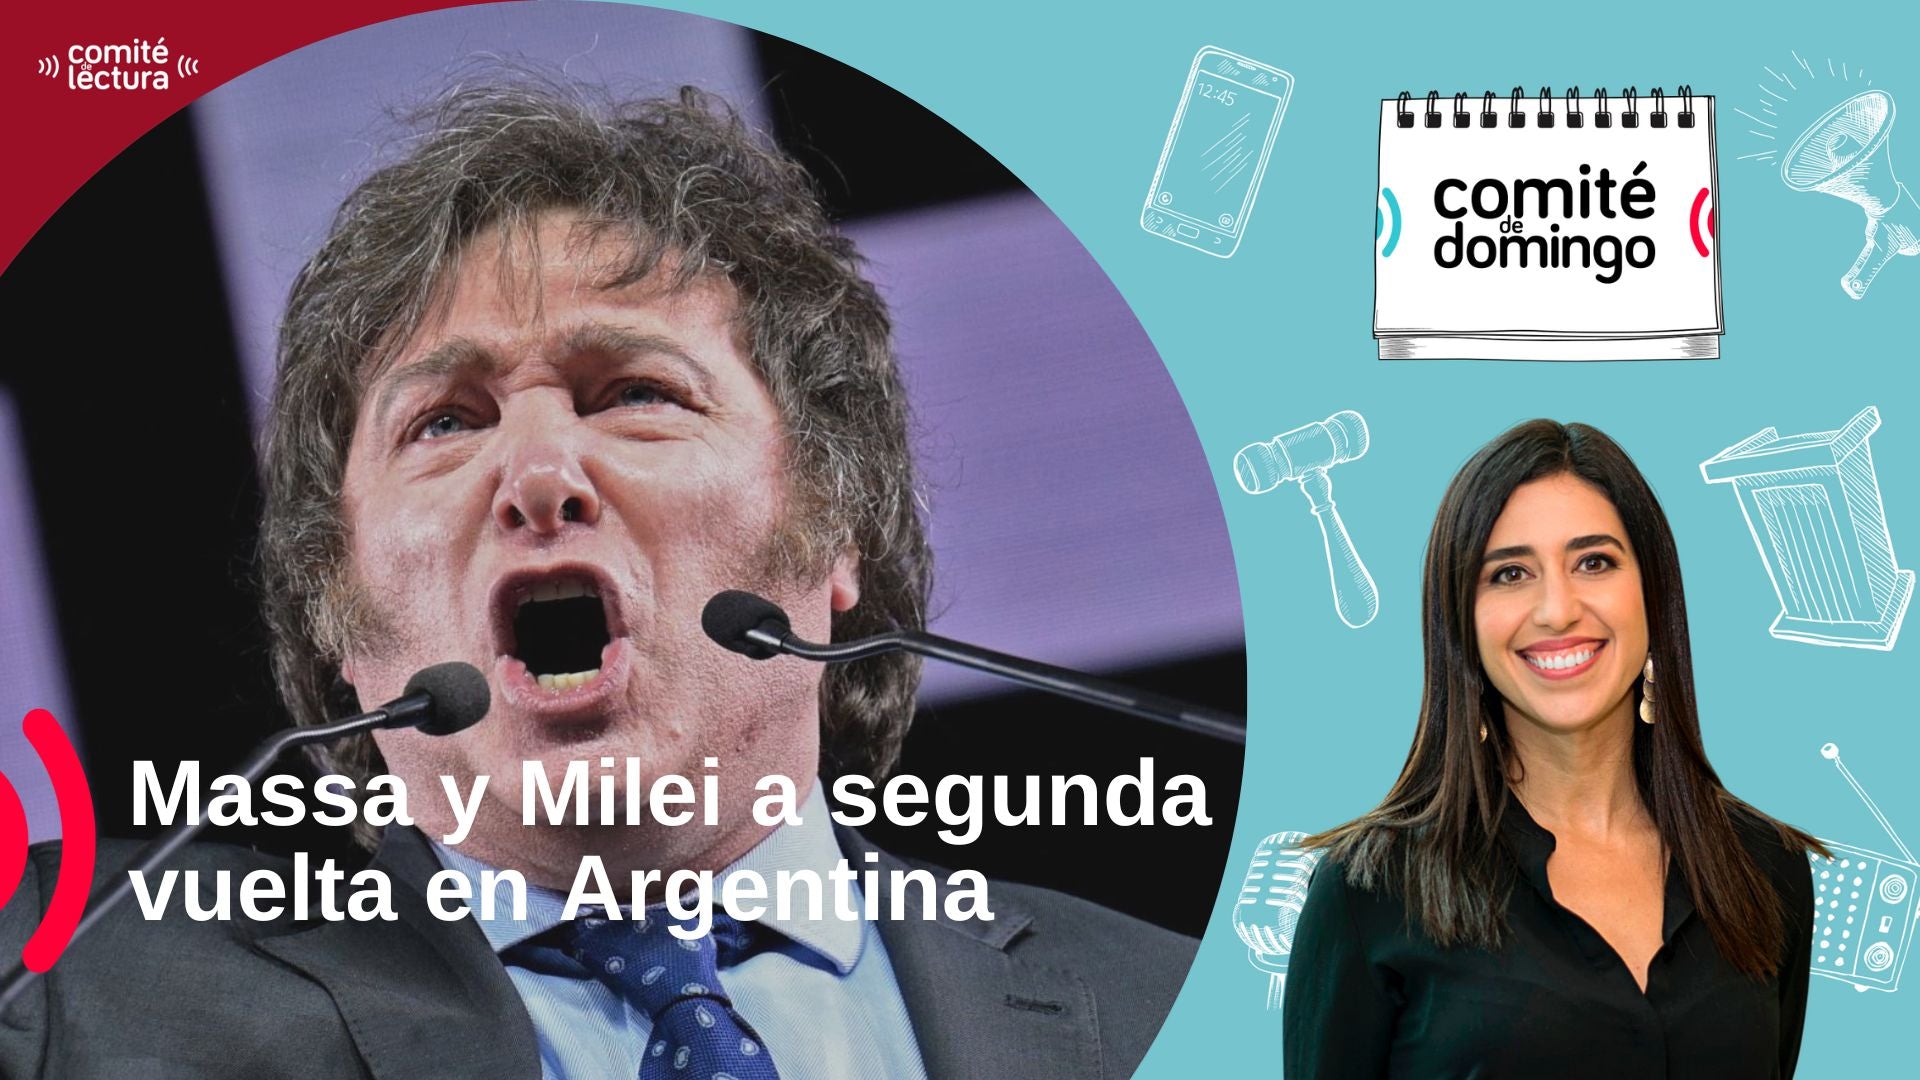 Massa y Milei a segunda vuelta en Argentina + Perú en recesión